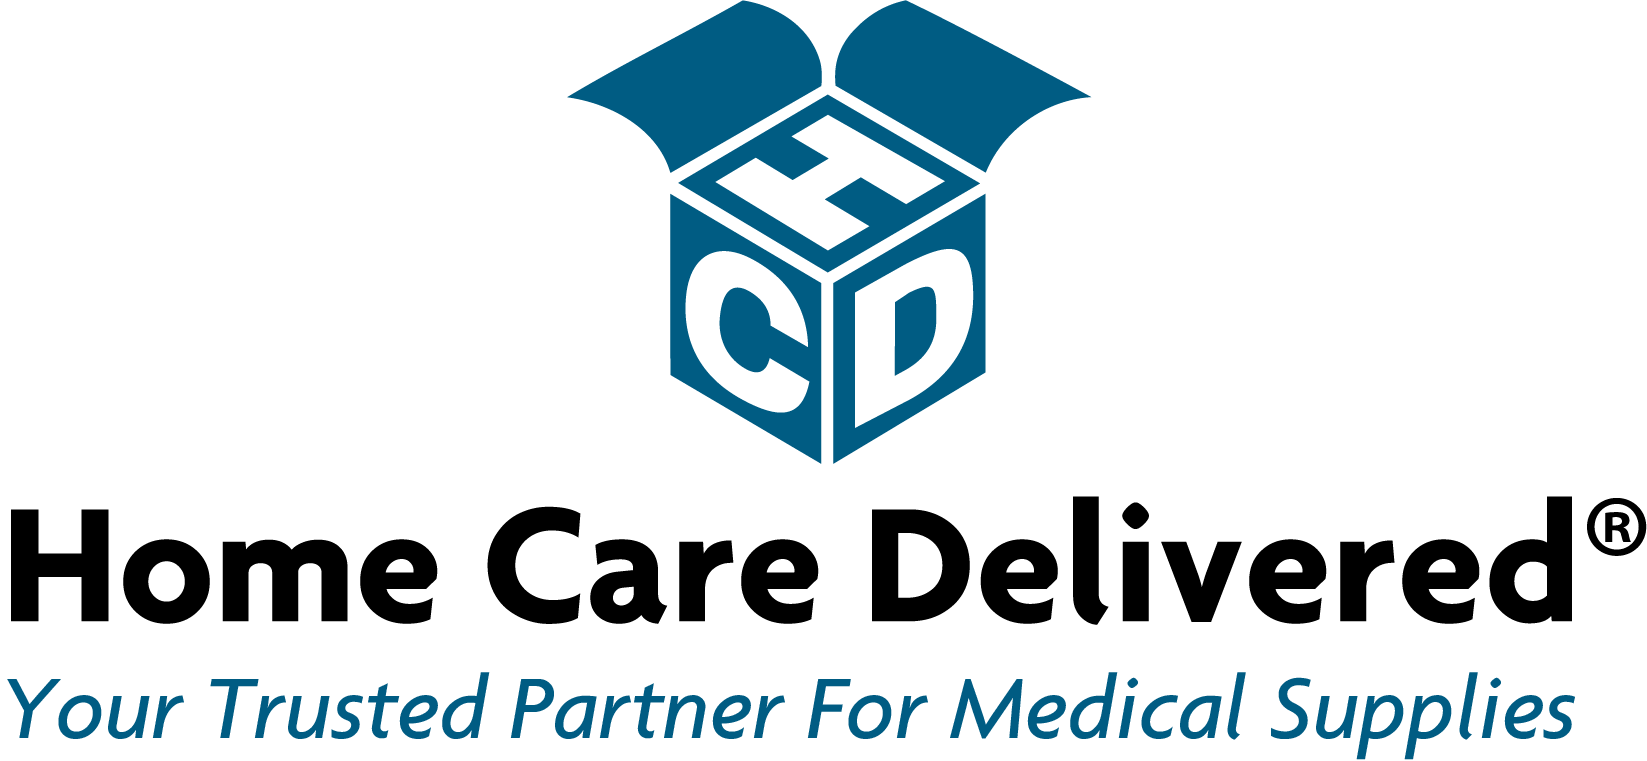 Home Care Delivered Inc logo